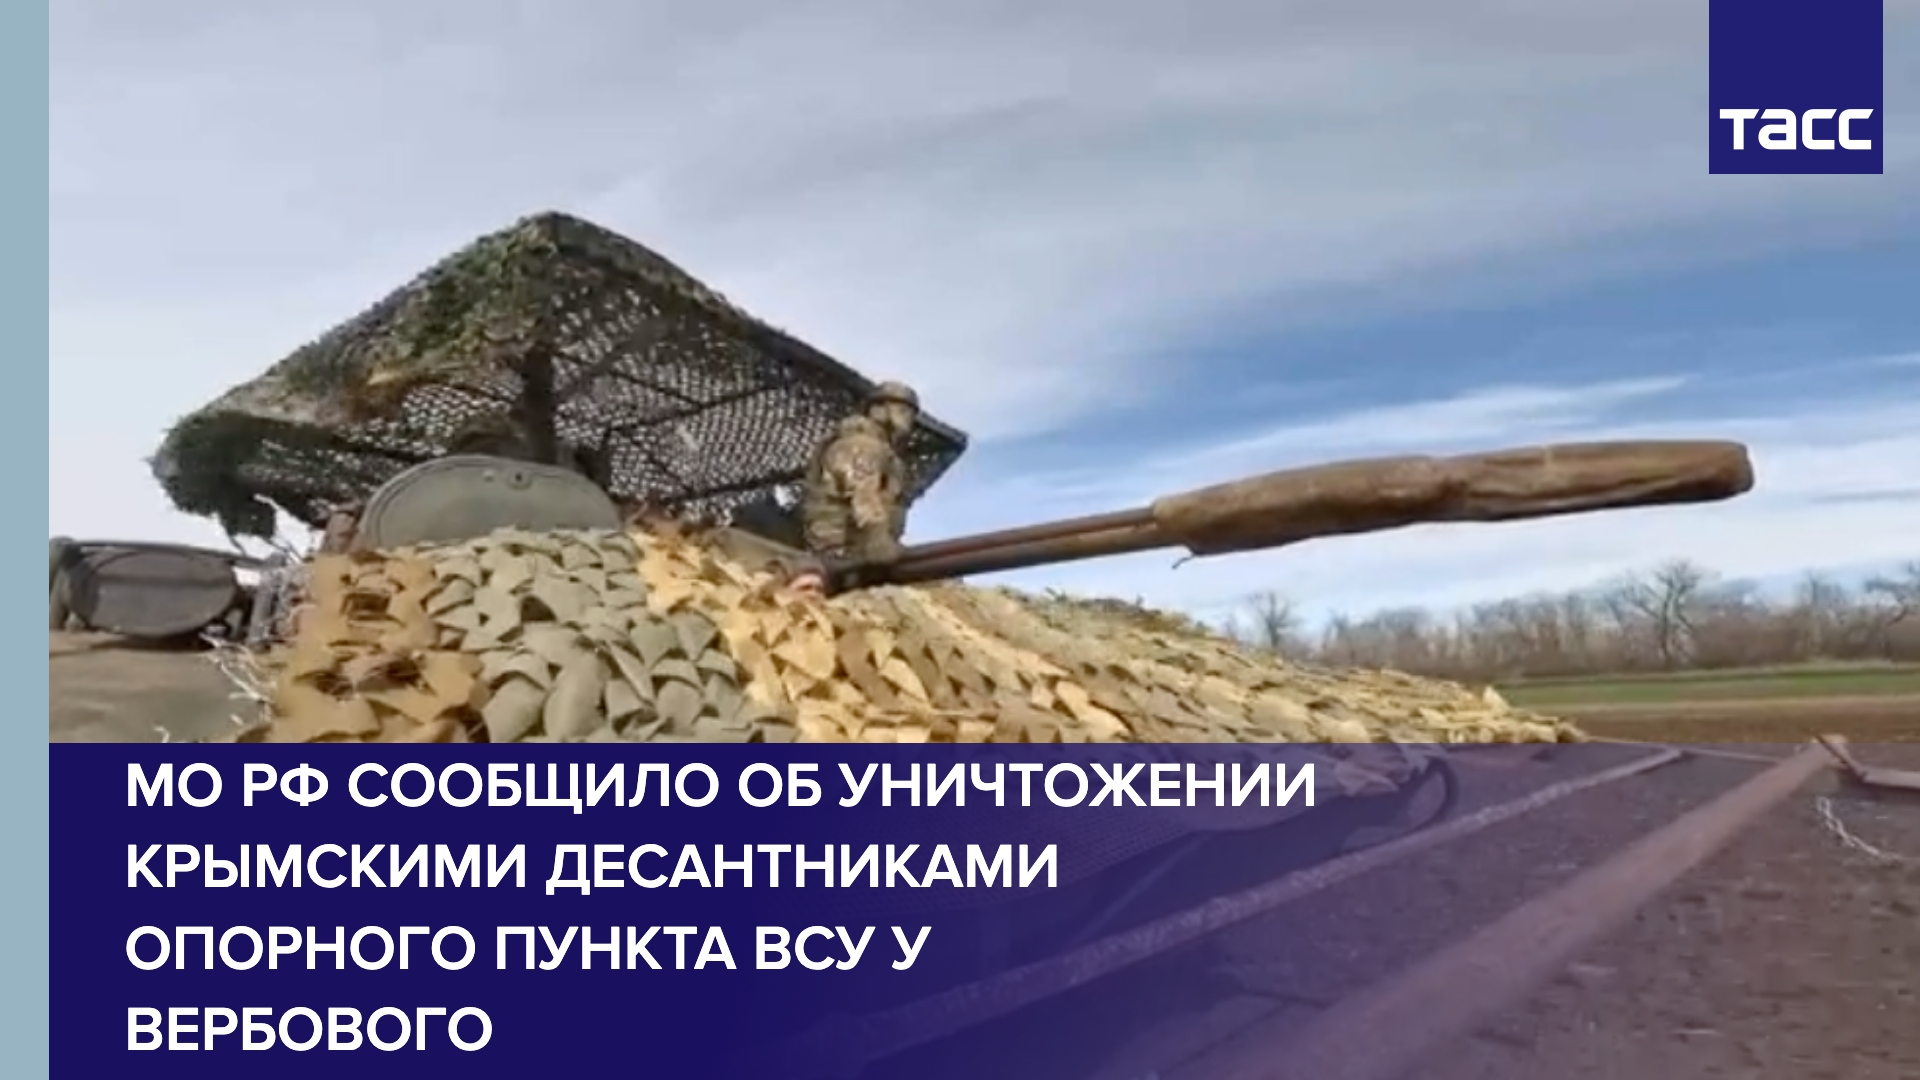 МО РФ сообщило об уничтожении крымскими десантниками опорного пункта ВСУ у Вербового